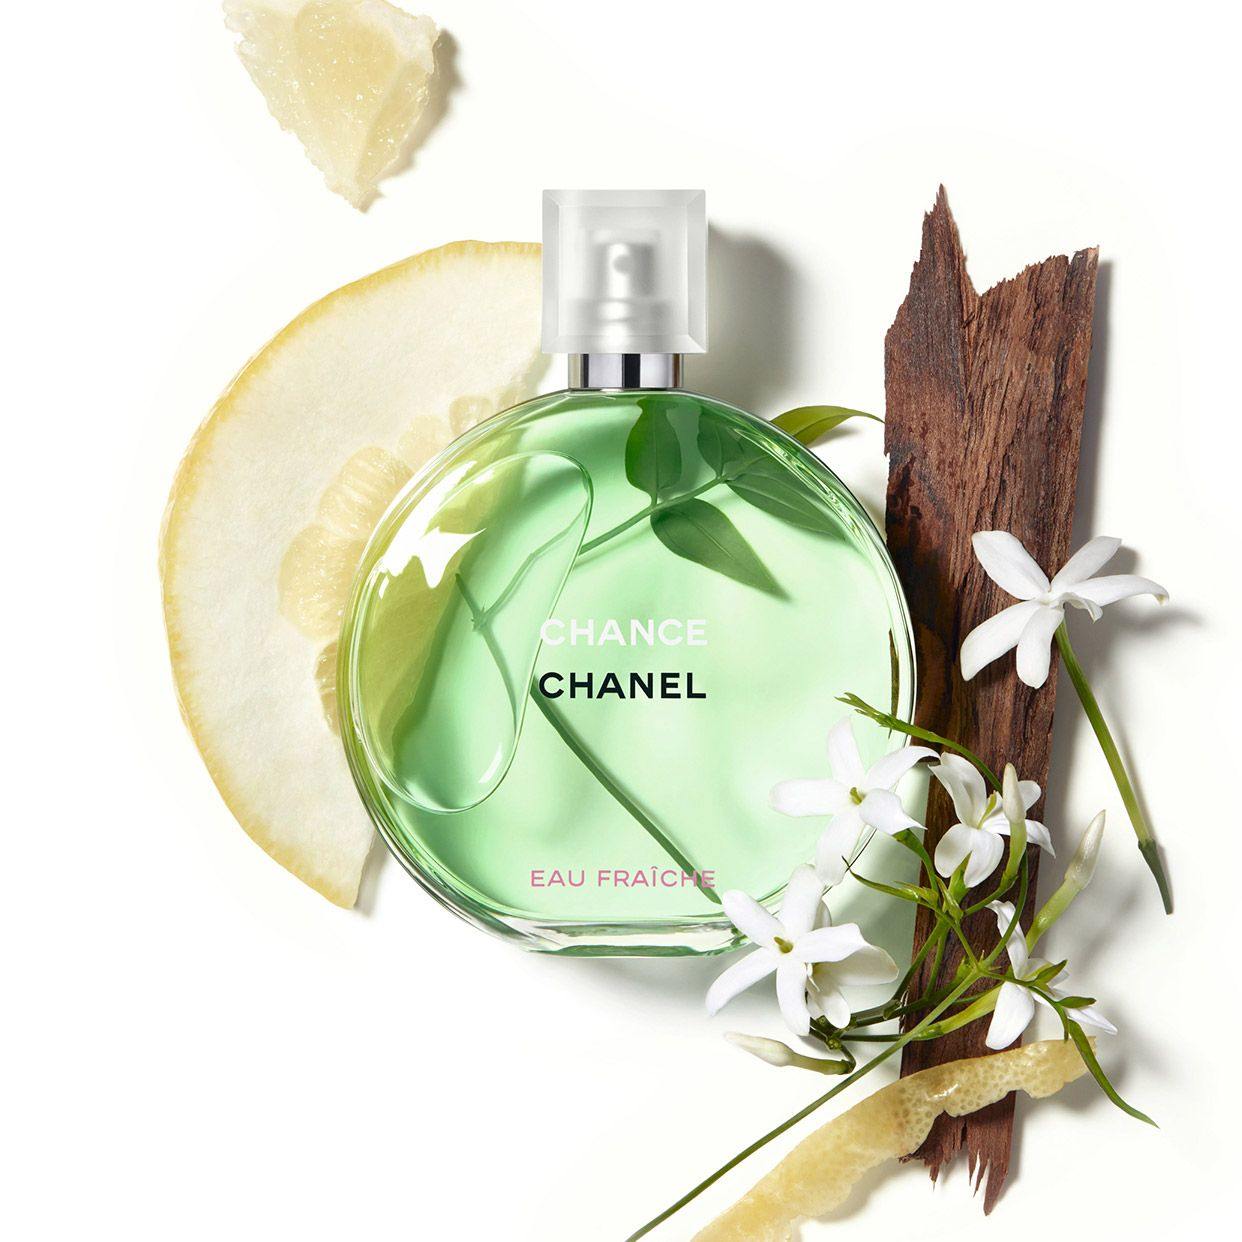 Chanel Chance Eau Fraiche Eau De Parfum VS Chanel Chance Eau Fraiche Eau De  Toilette 